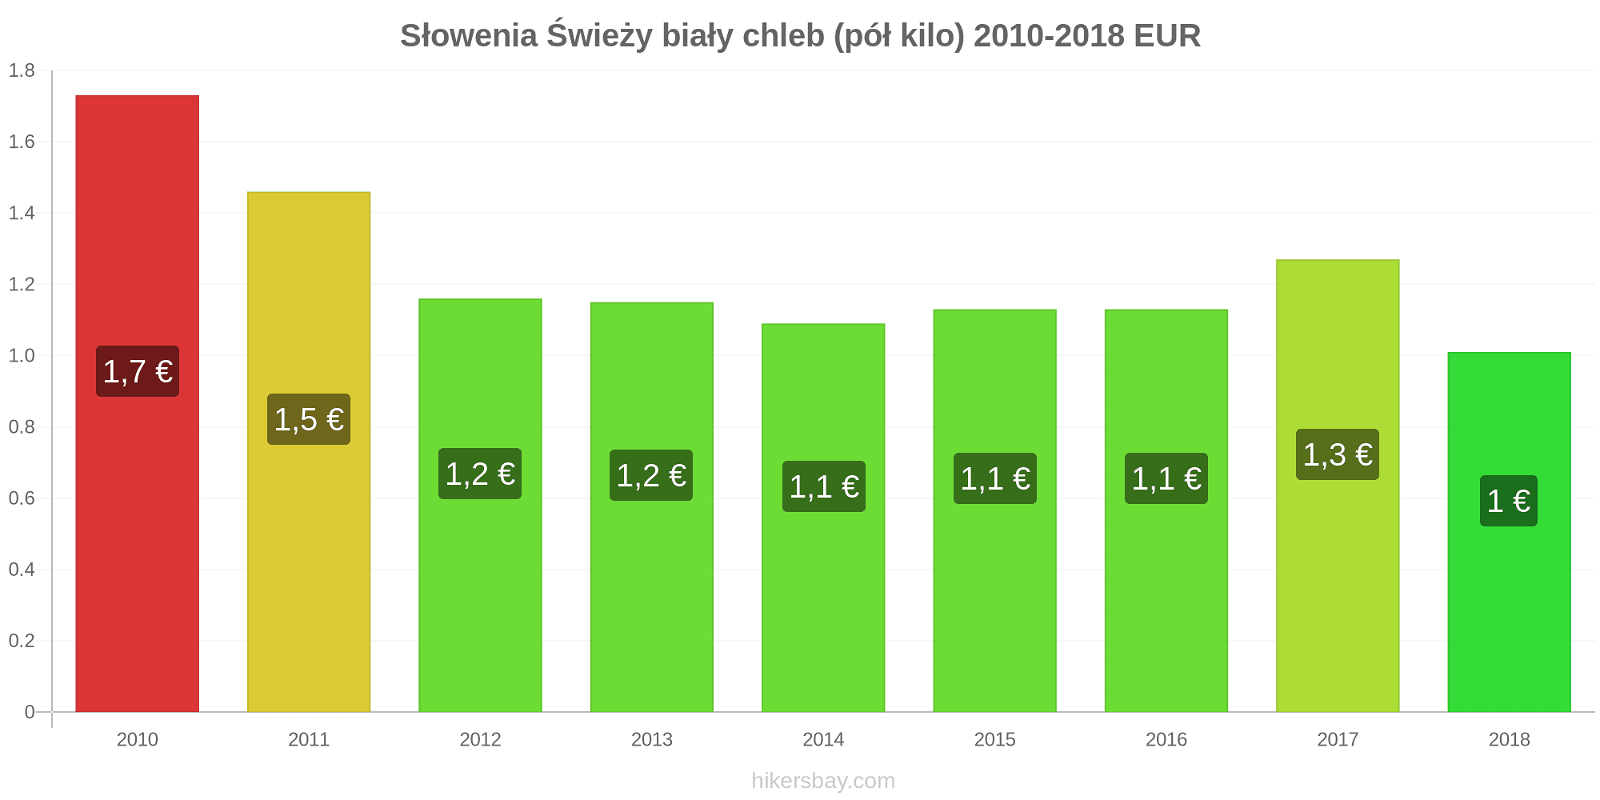 Słowenia zmiany cen Chleb pół kilo hikersbay.com